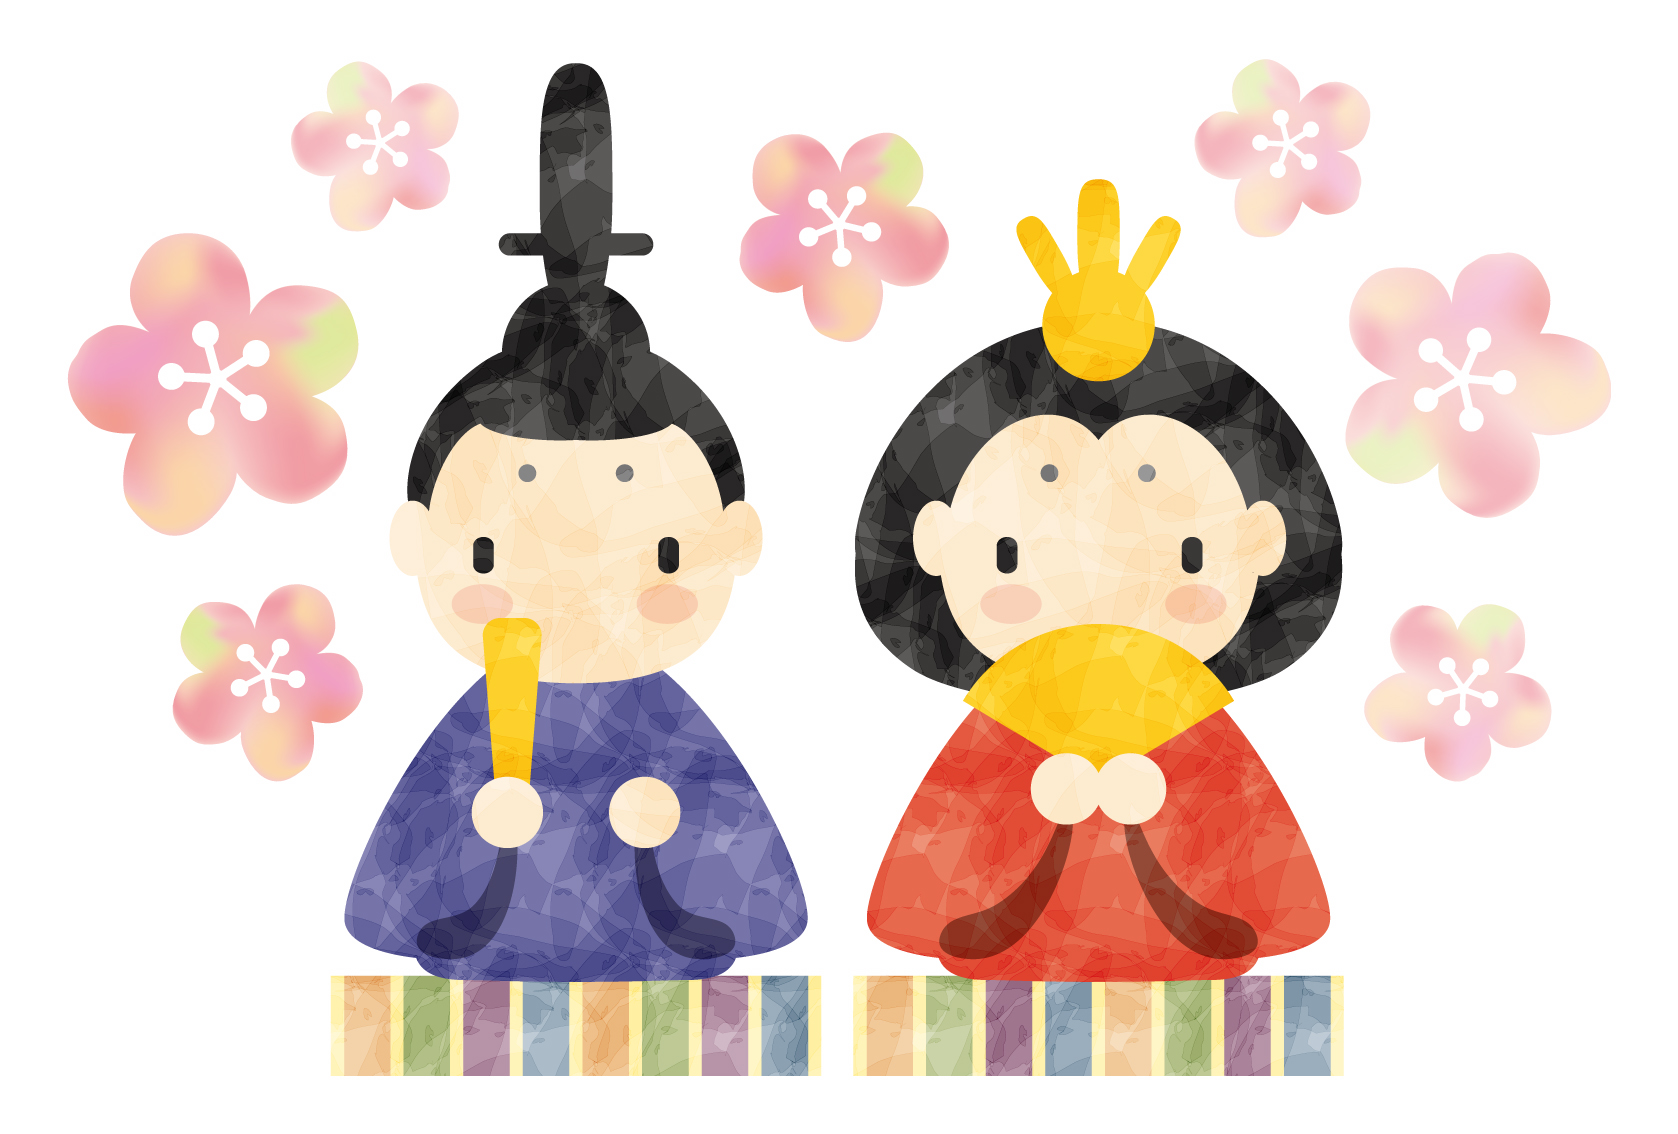 【2月24日】親子で人形劇や紙芝居を楽しもう♪草津市のロクハ荘で「ひなまつりイベント」が開催！事前予約制☆